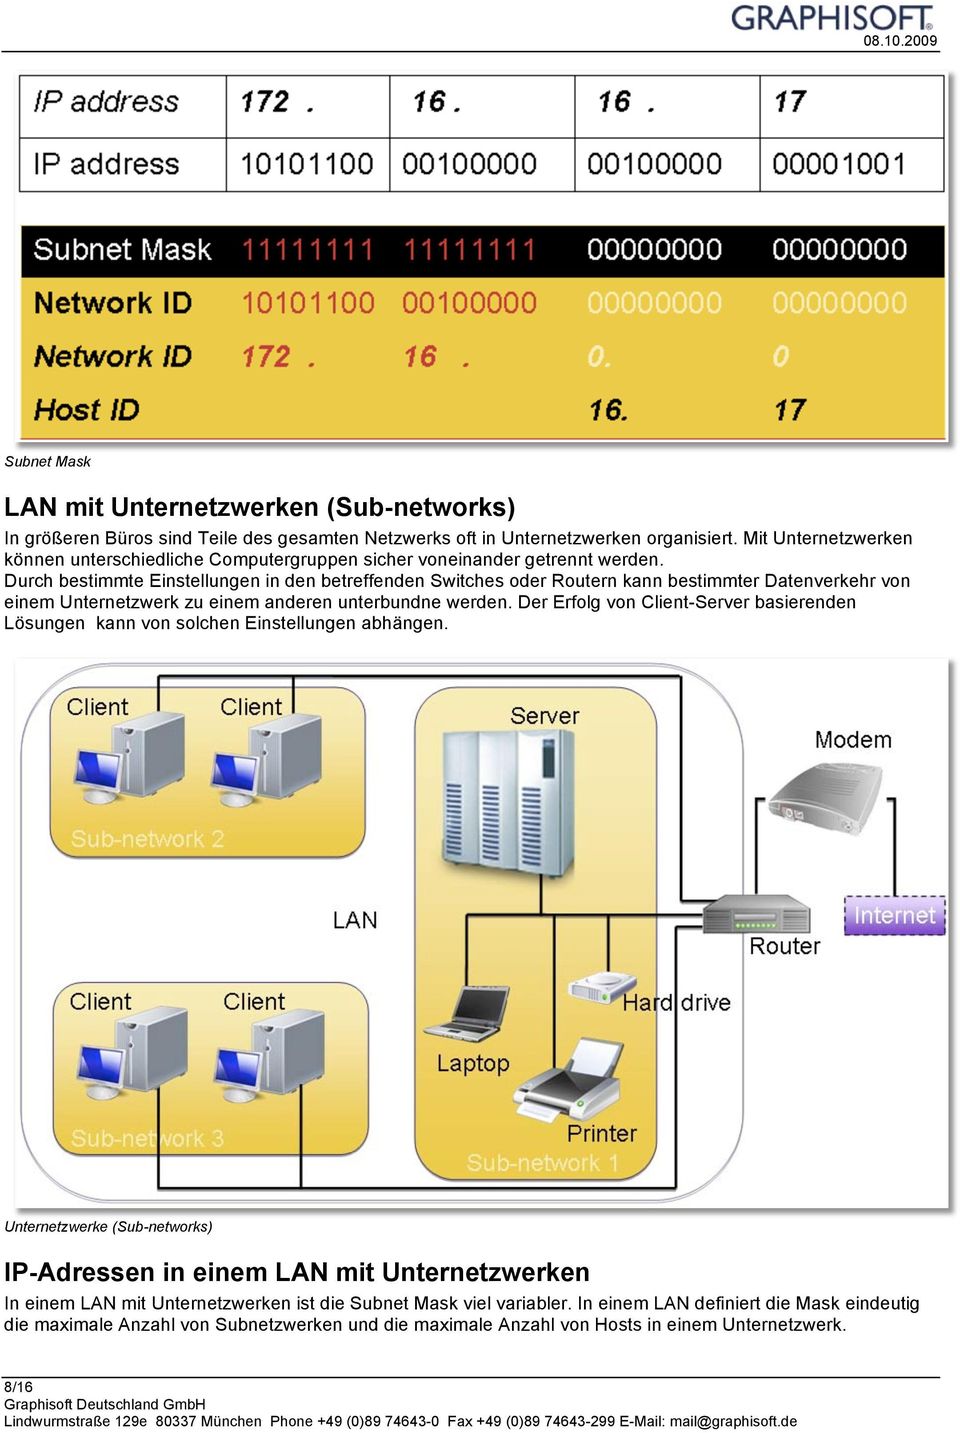 Durch bestimmte Einstellungen in den betreffenden Switches oder Routern kann bestimmter Datenverkehr von einem Unternetzwerk zu einem anderen unterbundne werden.